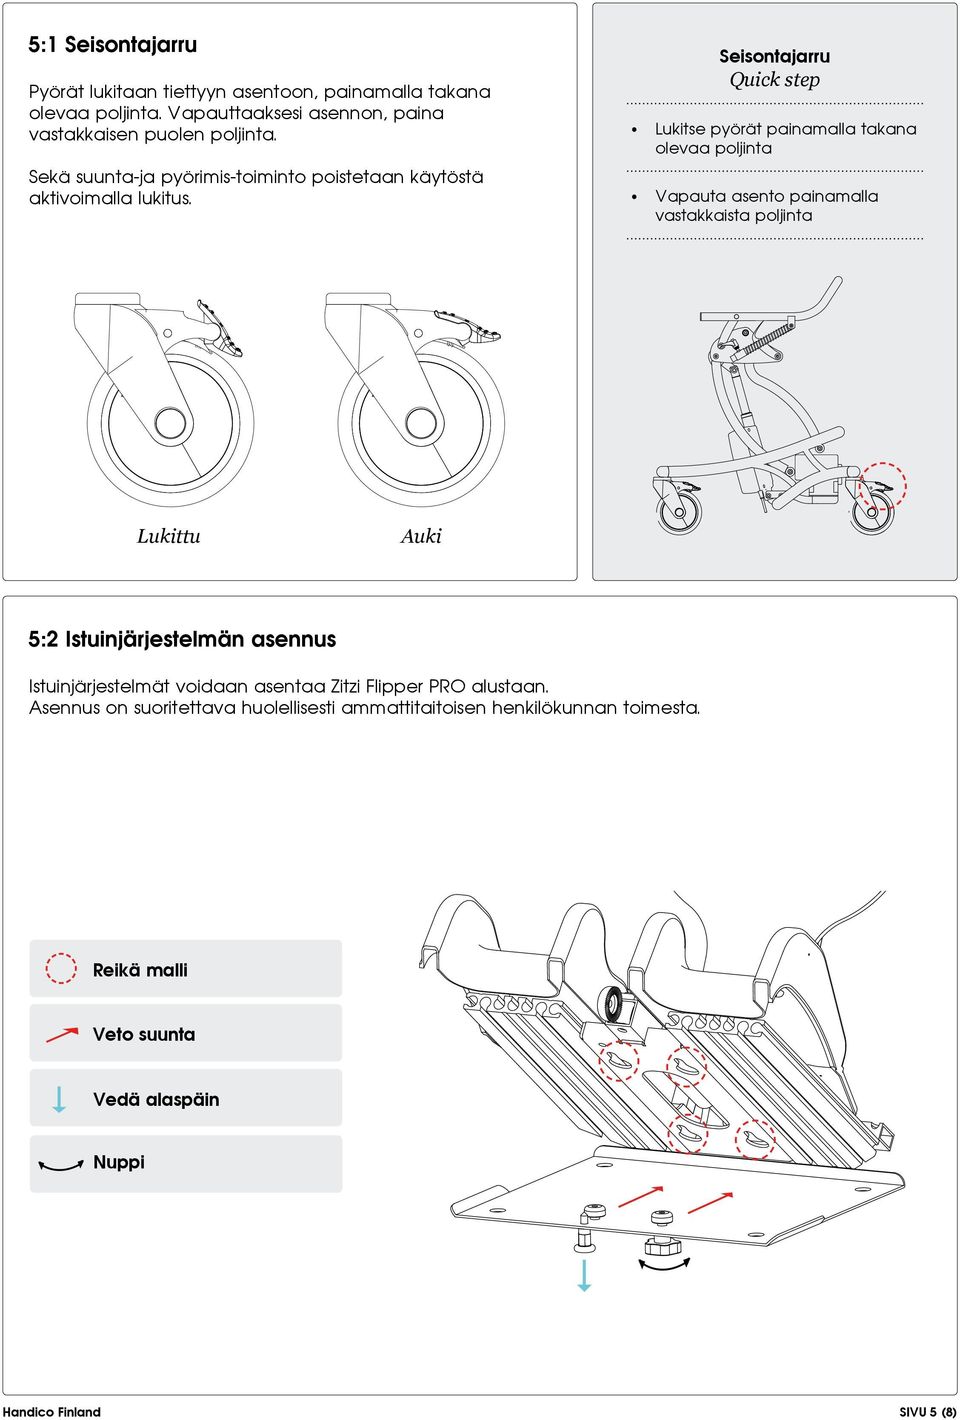 Lukittu Quick step Lukitse pyörät painamalla takana olevaa poljinta Vapauta asento painamalla vastakkaista poljinta Auki 5:2 Istuinjärjestelmän